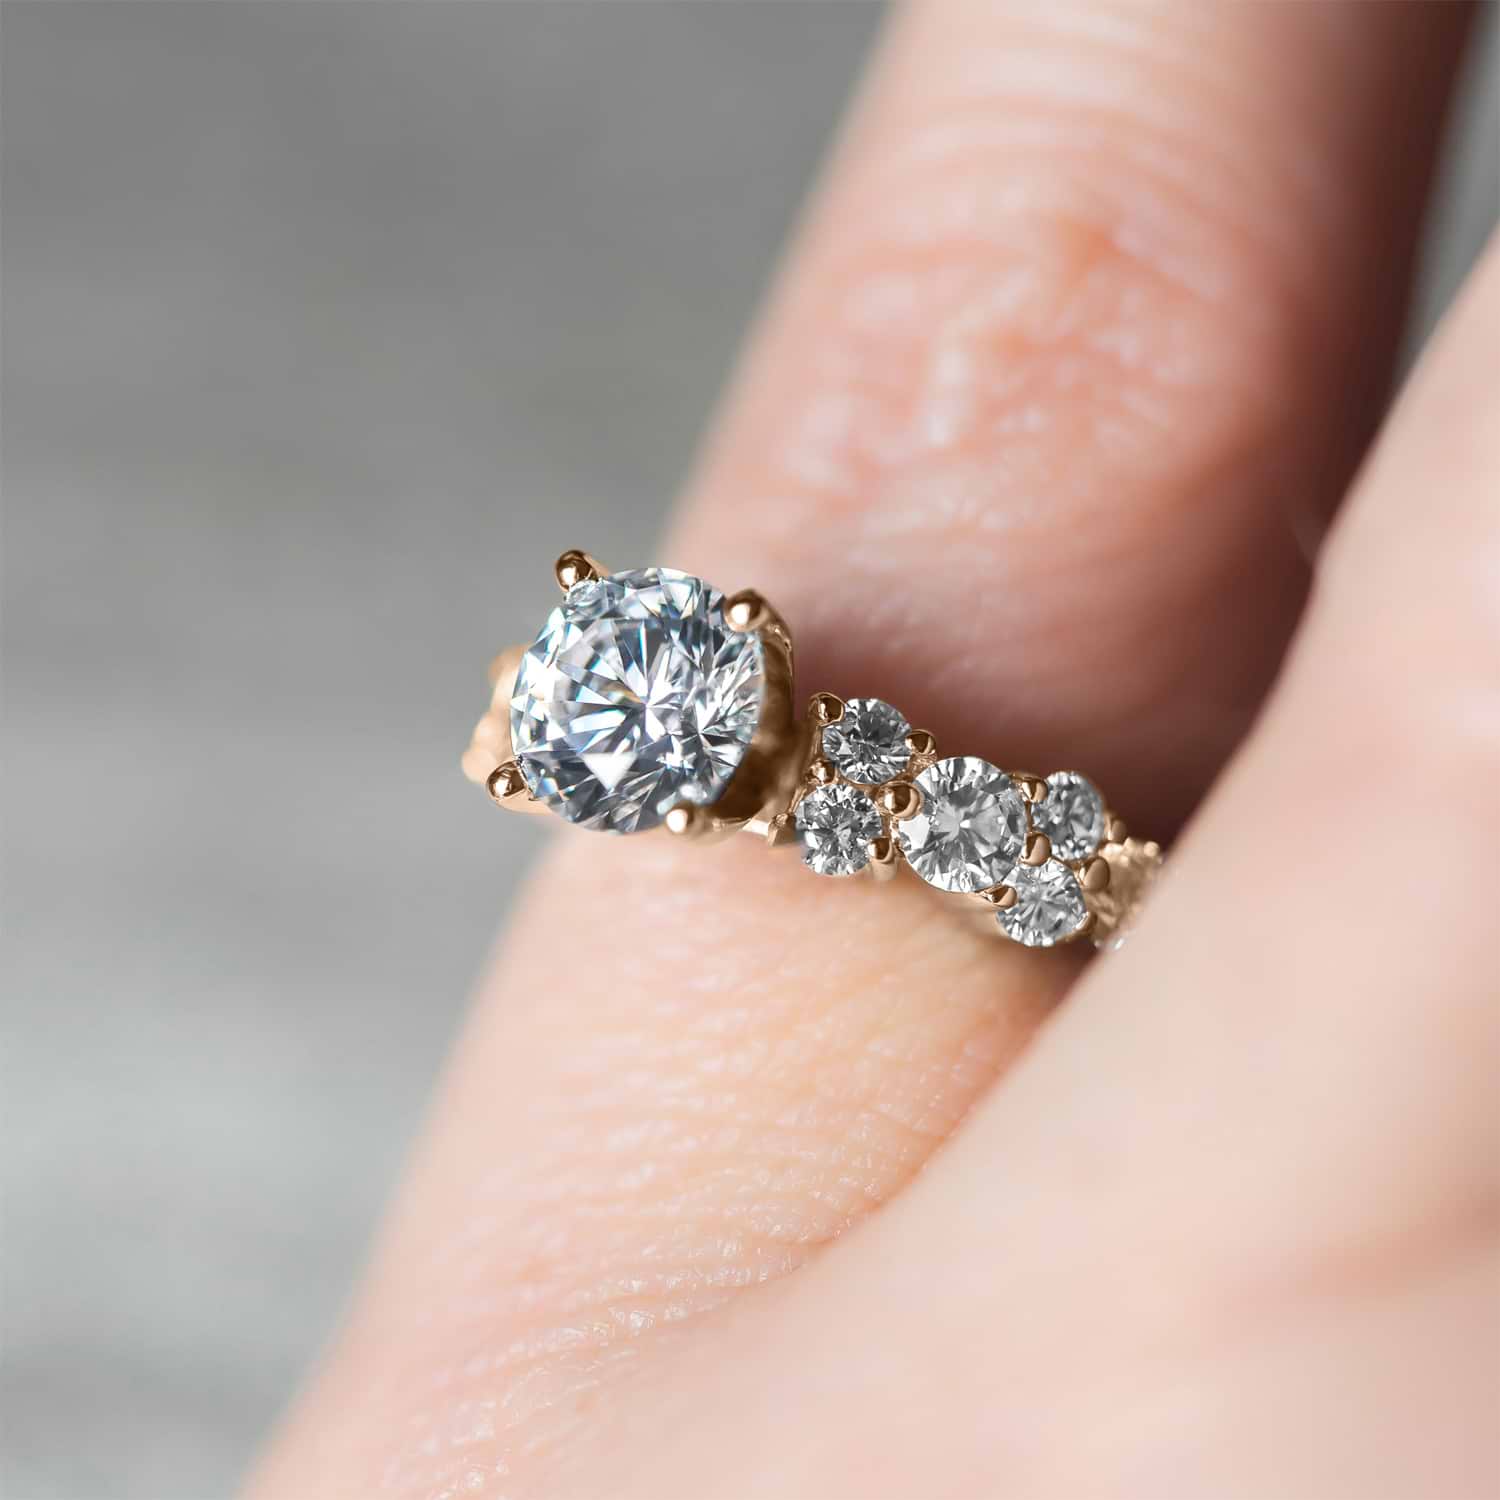 Diamond Garland Engagement Ring Setting 18K Rose Gold (0.66ct)